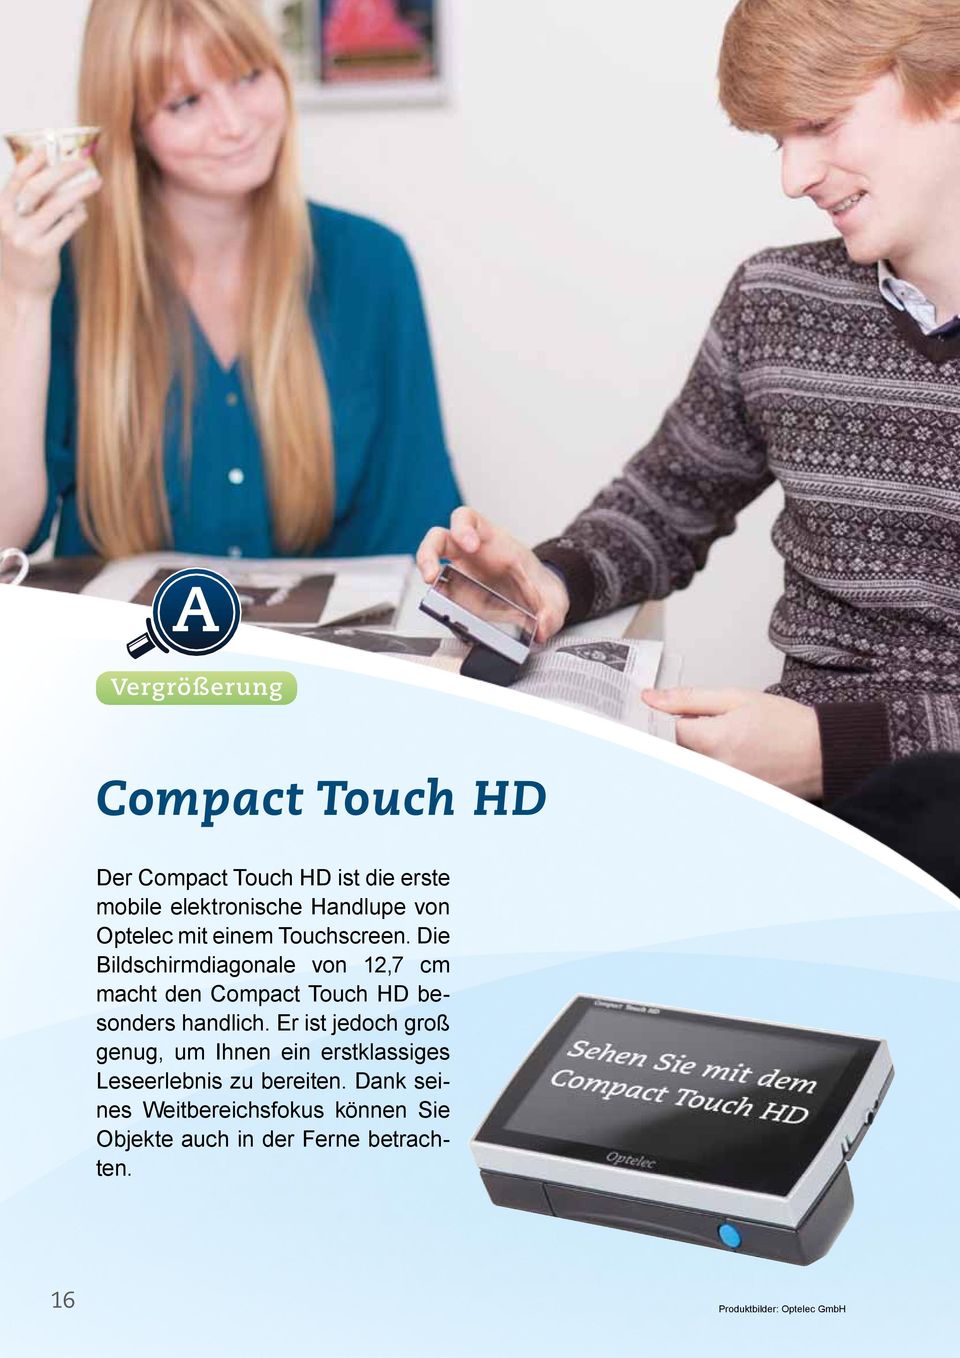 Die Bildschirmdiagonale von 12,7 cm macht den Compact Touch HD besonders handlich.